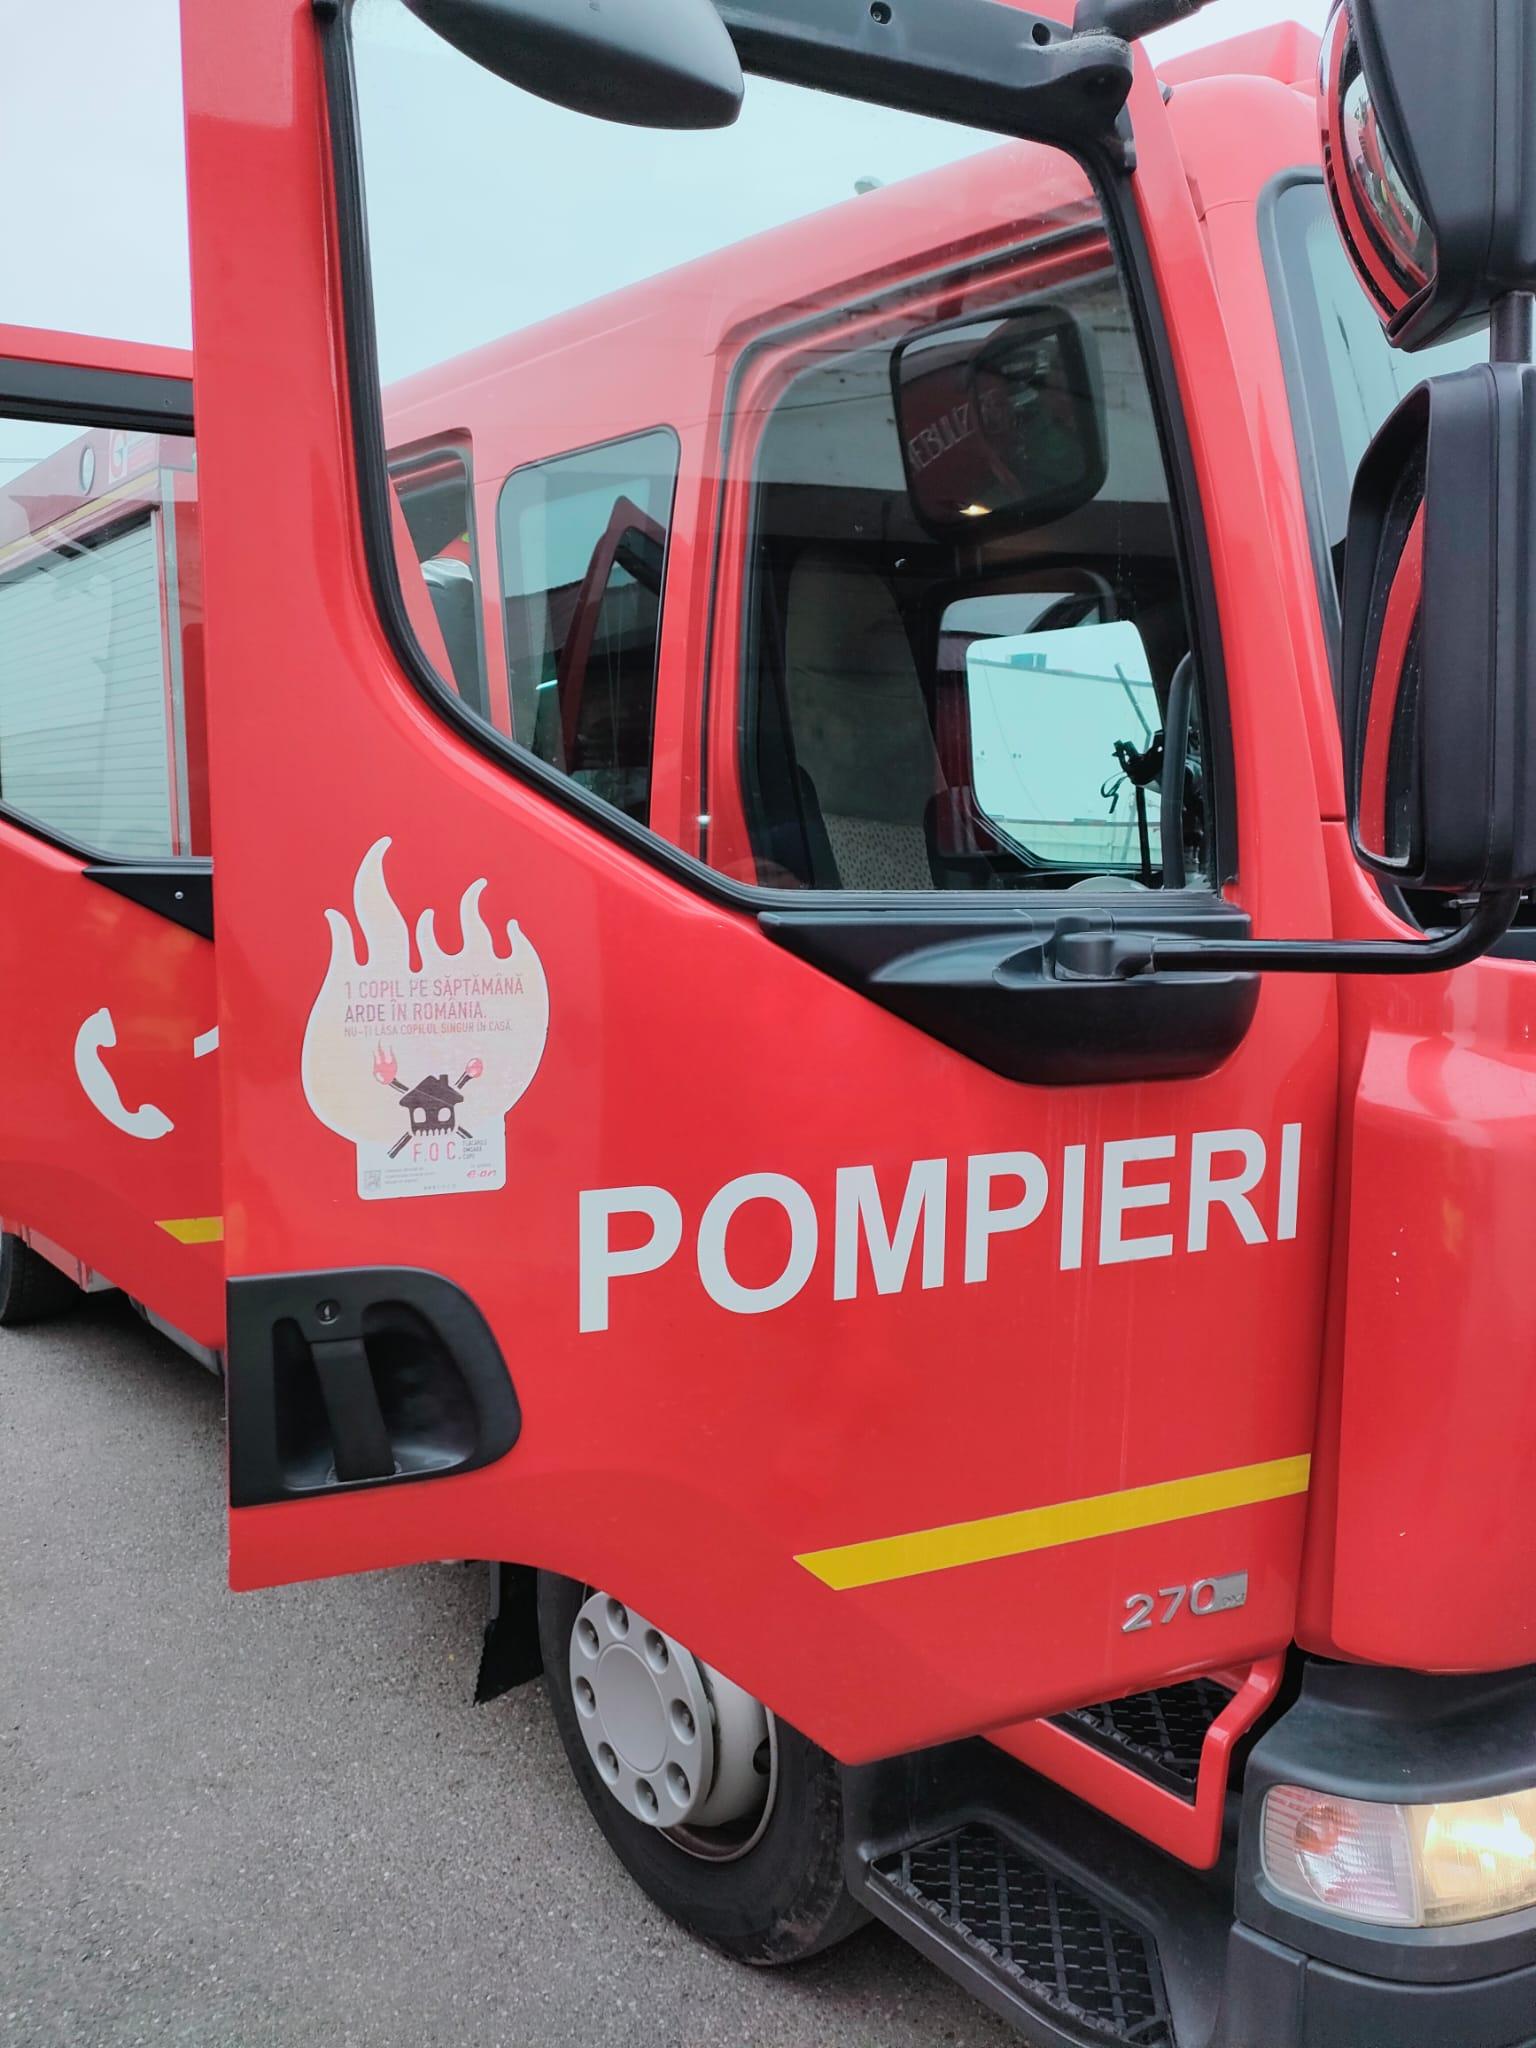 O ambulanță a luat foc în mers, la Suceava. Un pompier aflat în timpul liber a observat fumul și a sărit în ajutorul echipajului medical